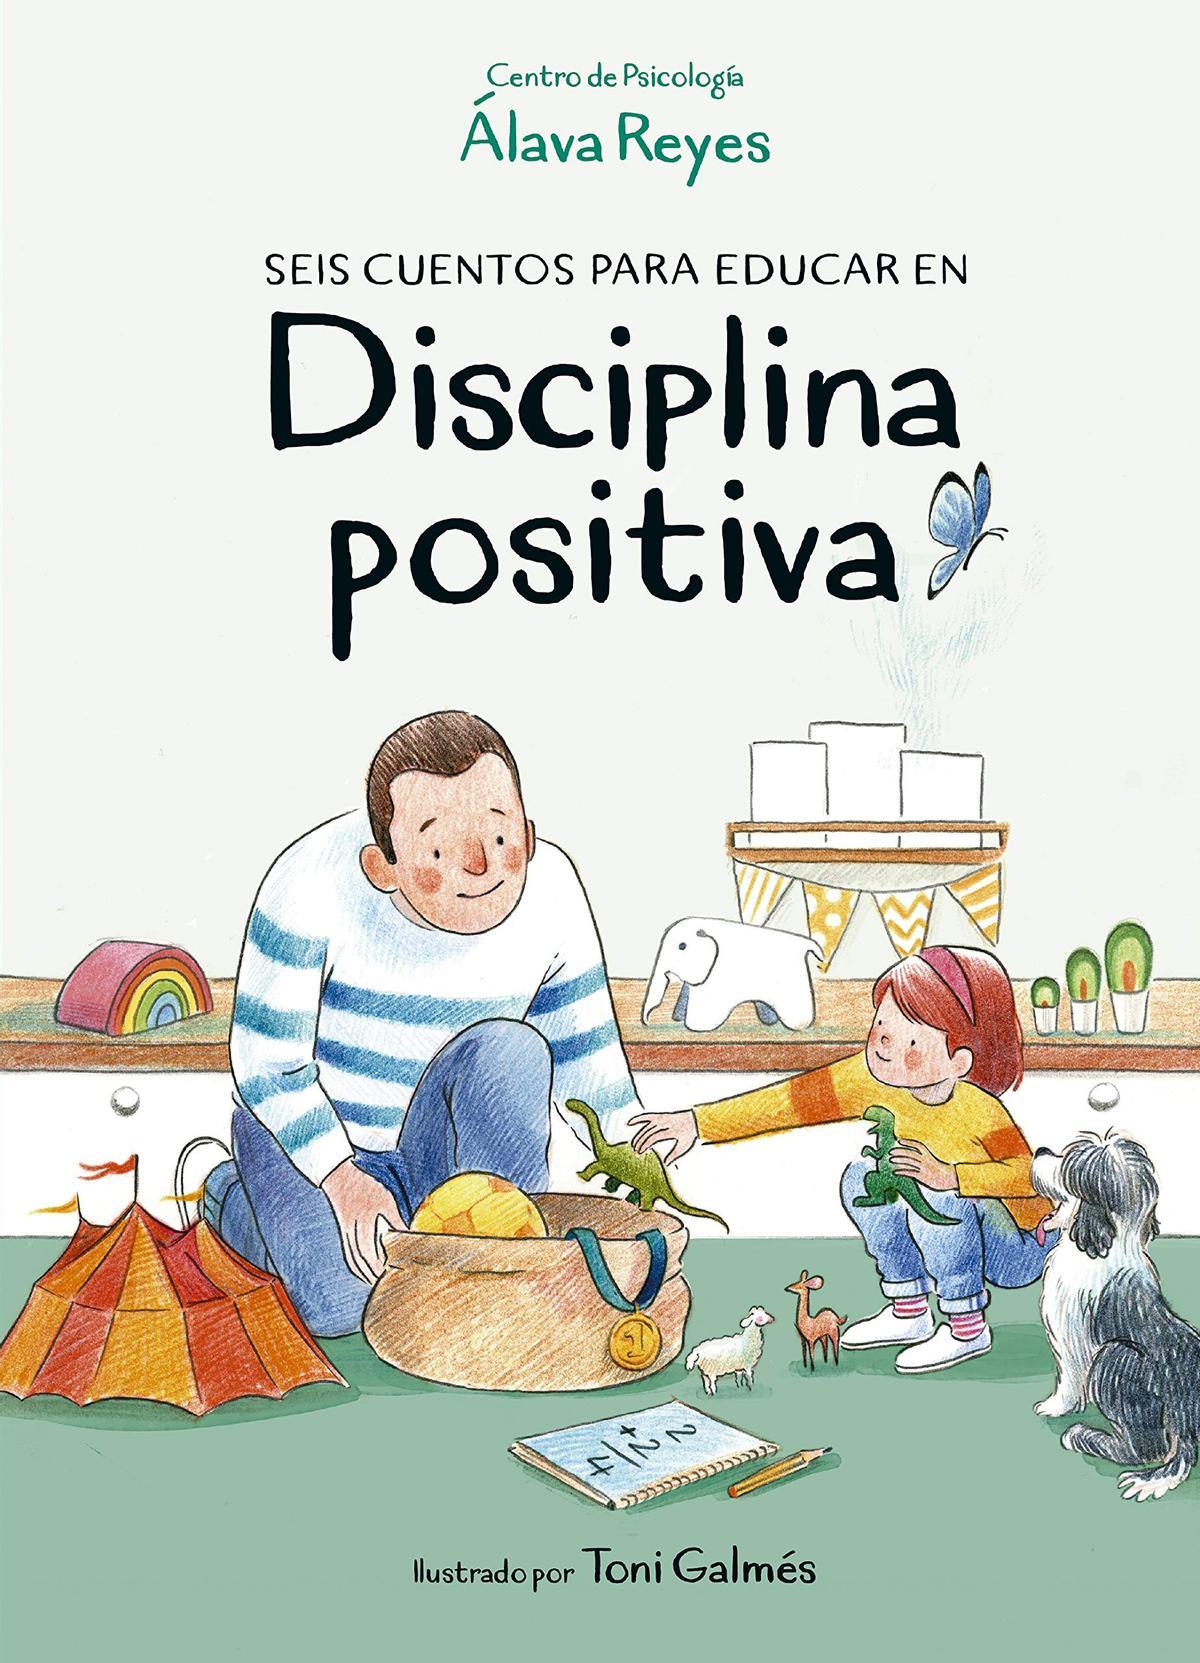 “Seis cuentos para educar en disciplina positiva”, por el Centro de Psicología Álava Reyes